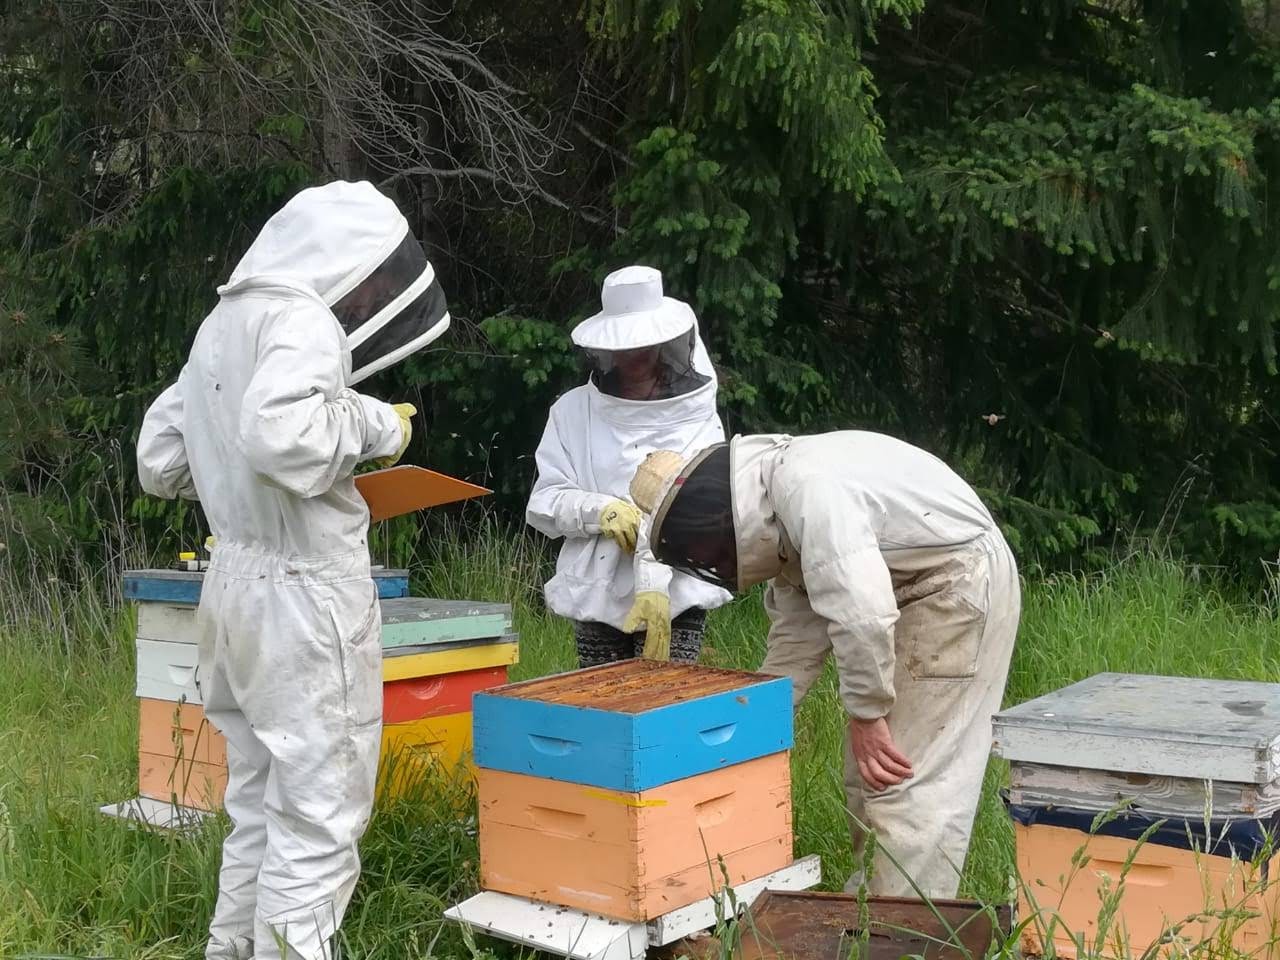 Los investigadores mandaron a analizar a un laboratorio certificado diez muestras de apicultores de la región. Gentileza